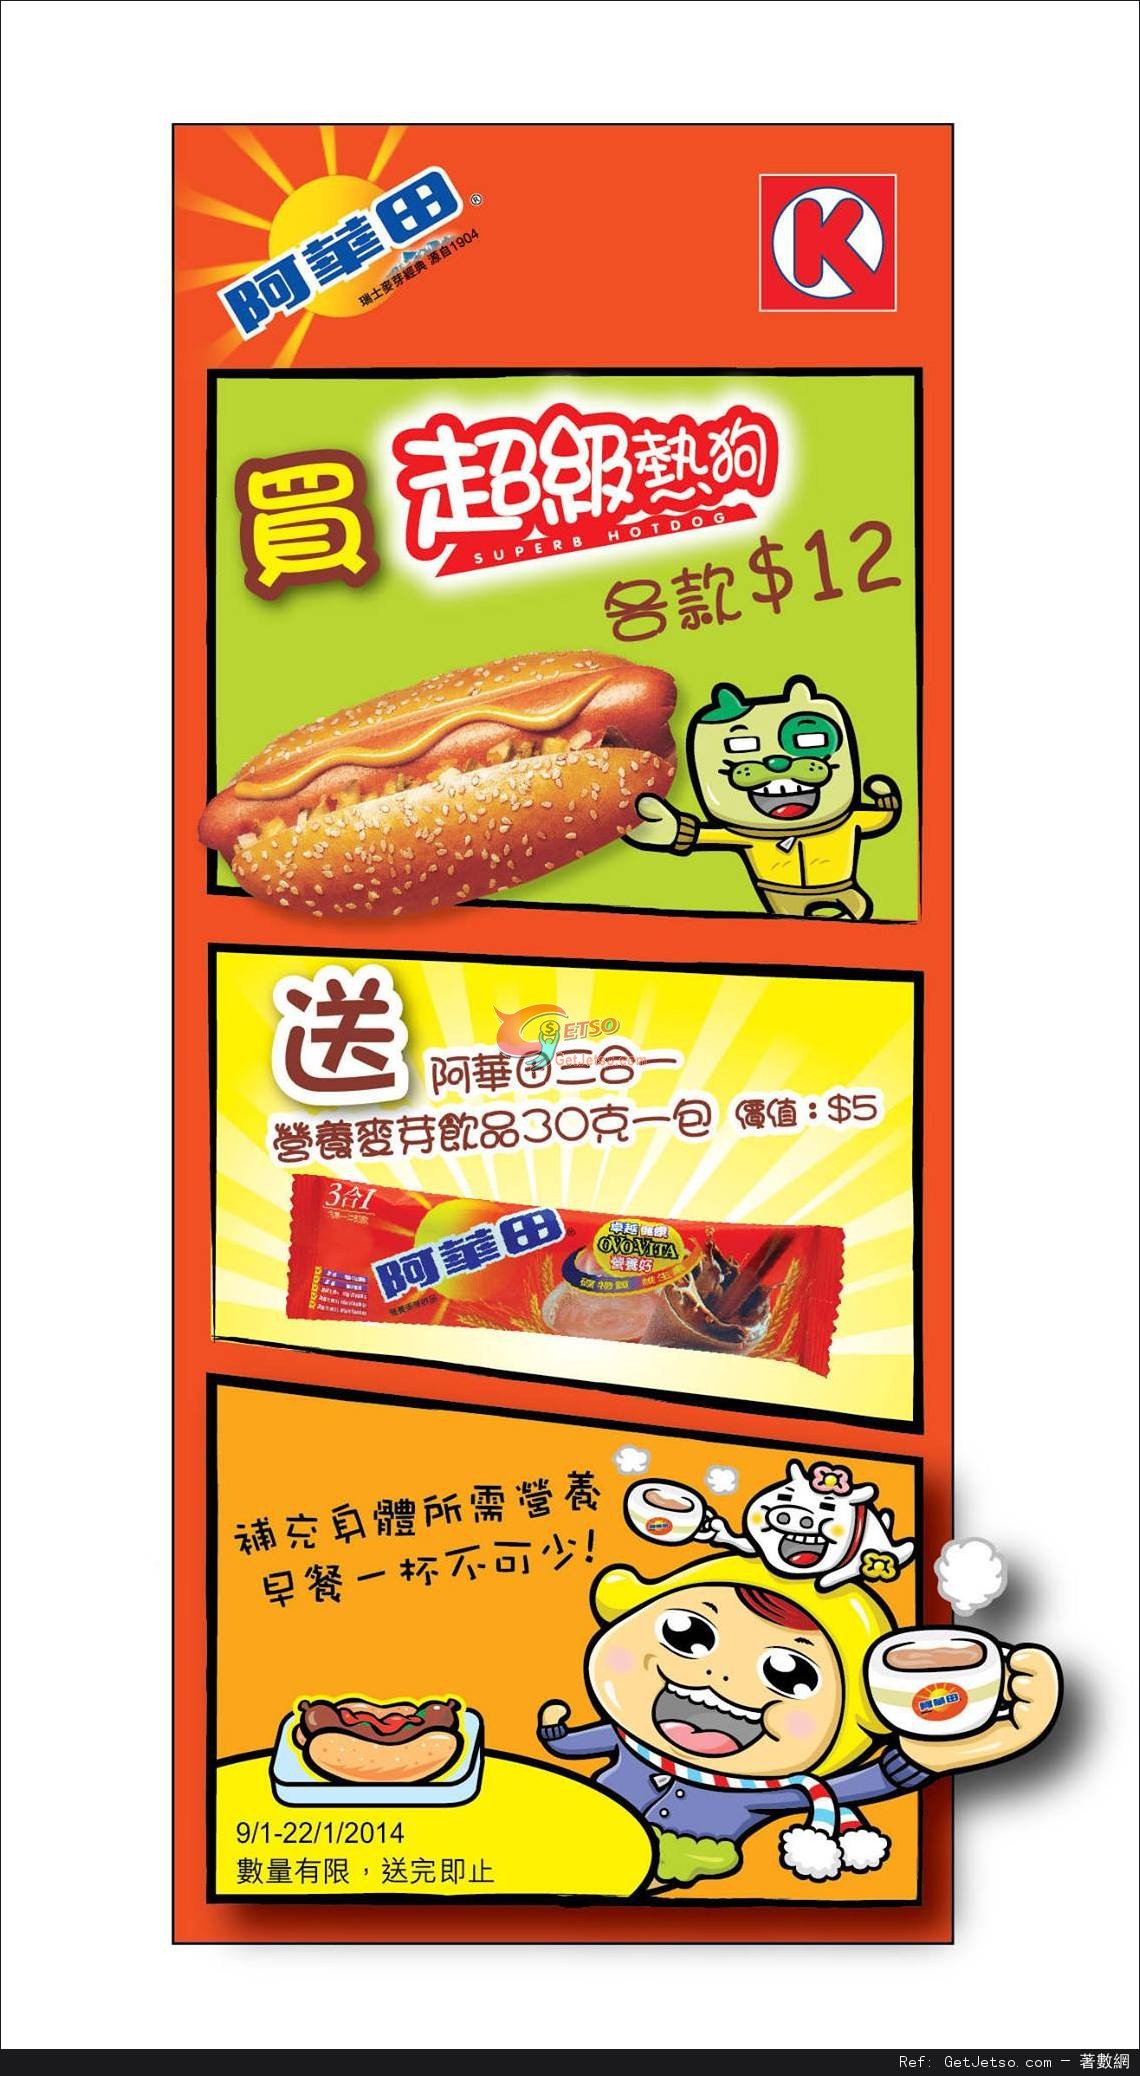 OK便利店購買超級熱狗送阿華田飲品優惠(至14年1月22日)圖片1